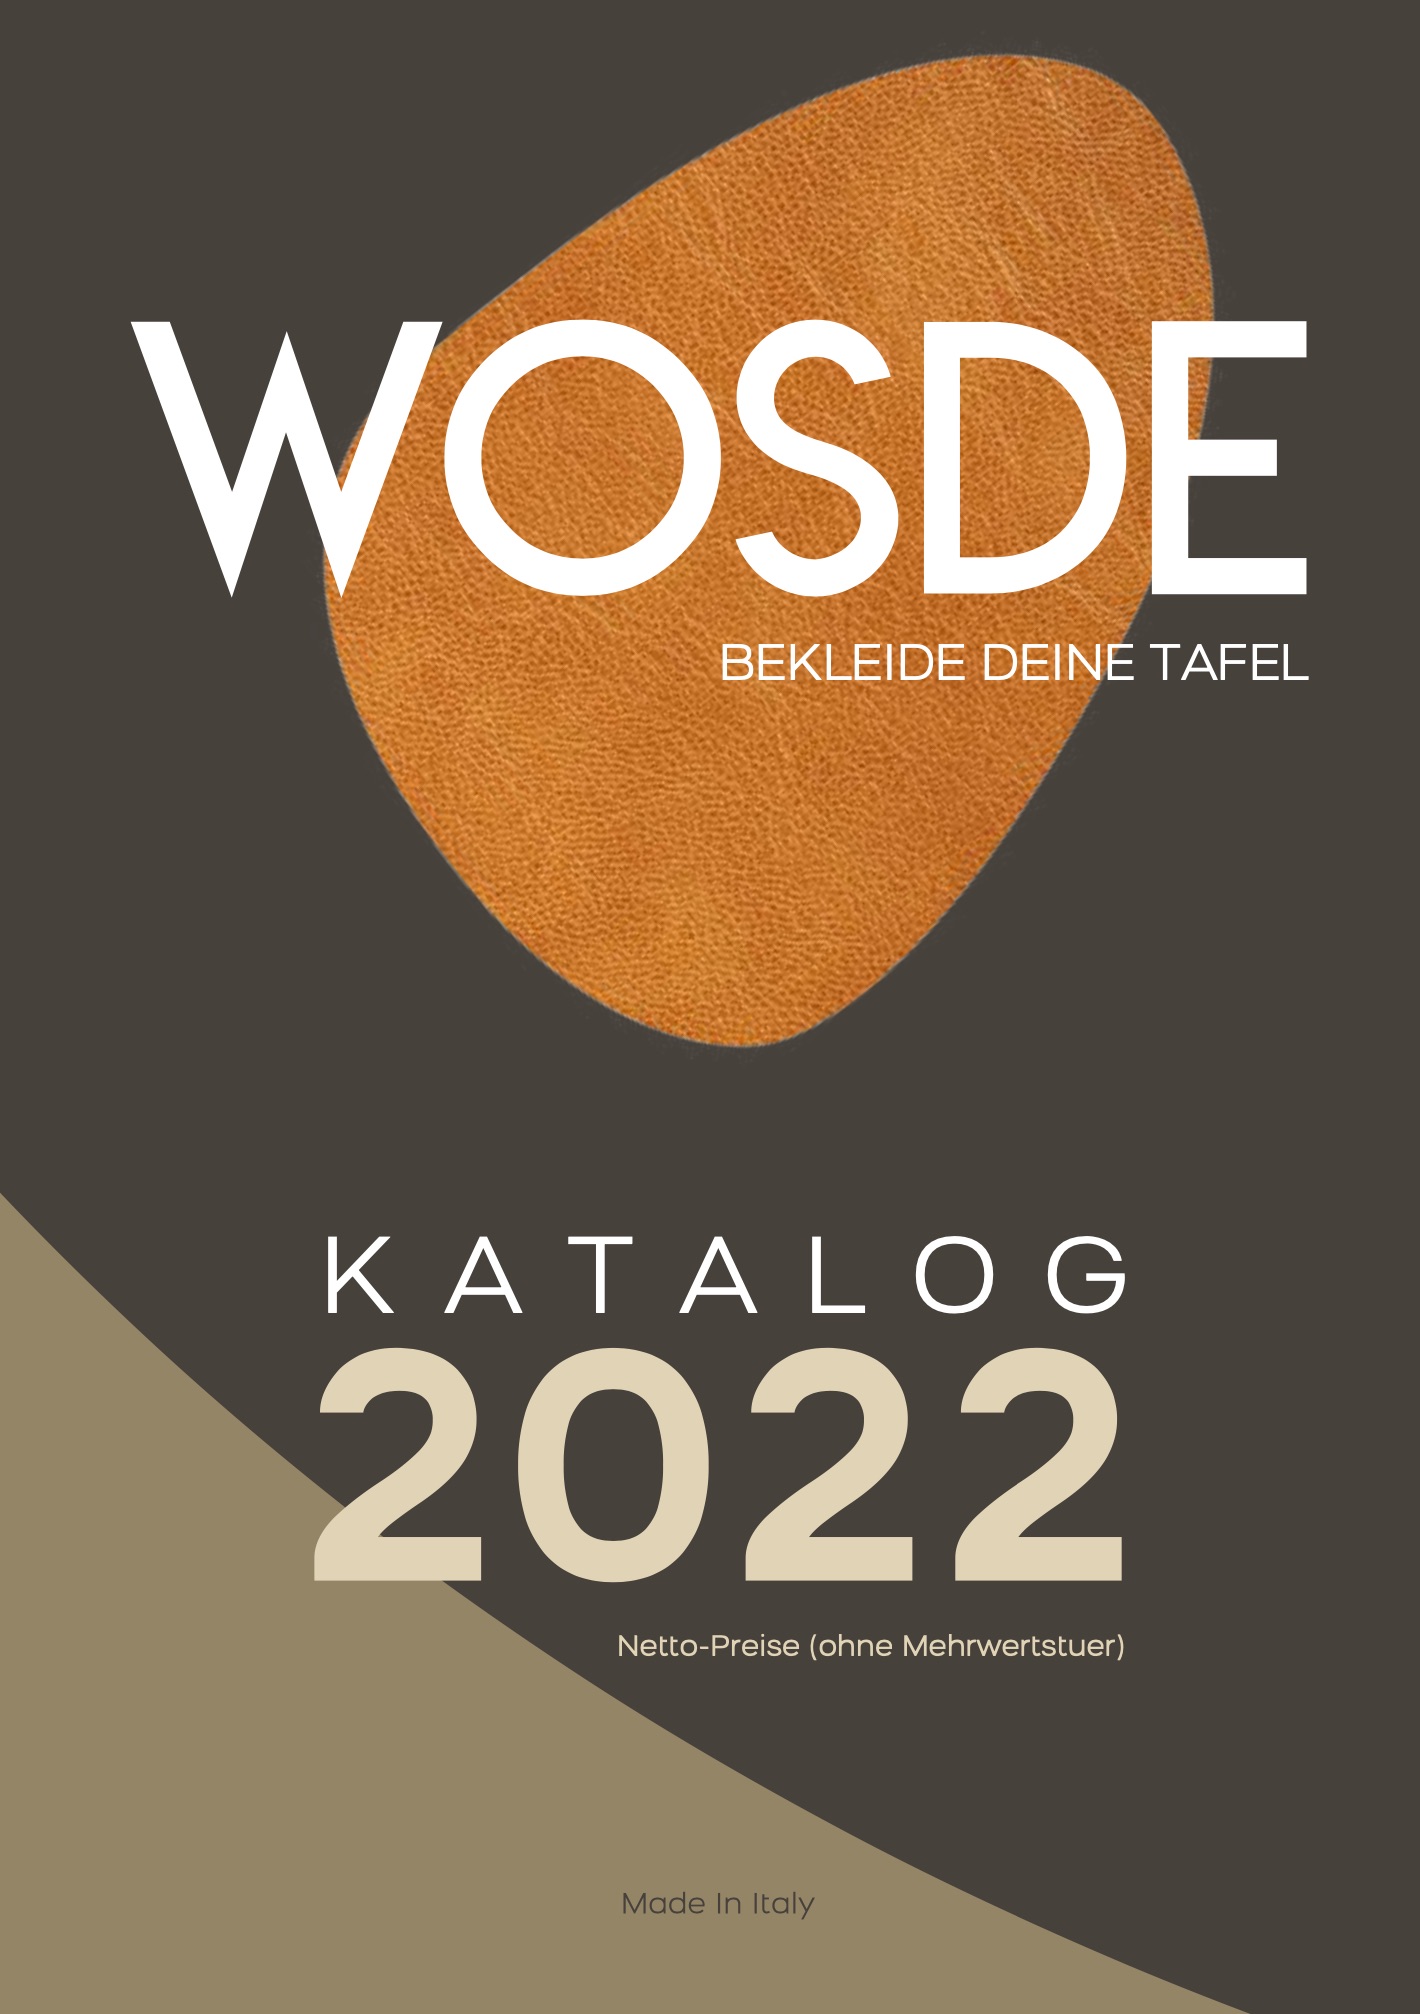 WOSDE veganes Kunstleder made in Italy Katalog PDF